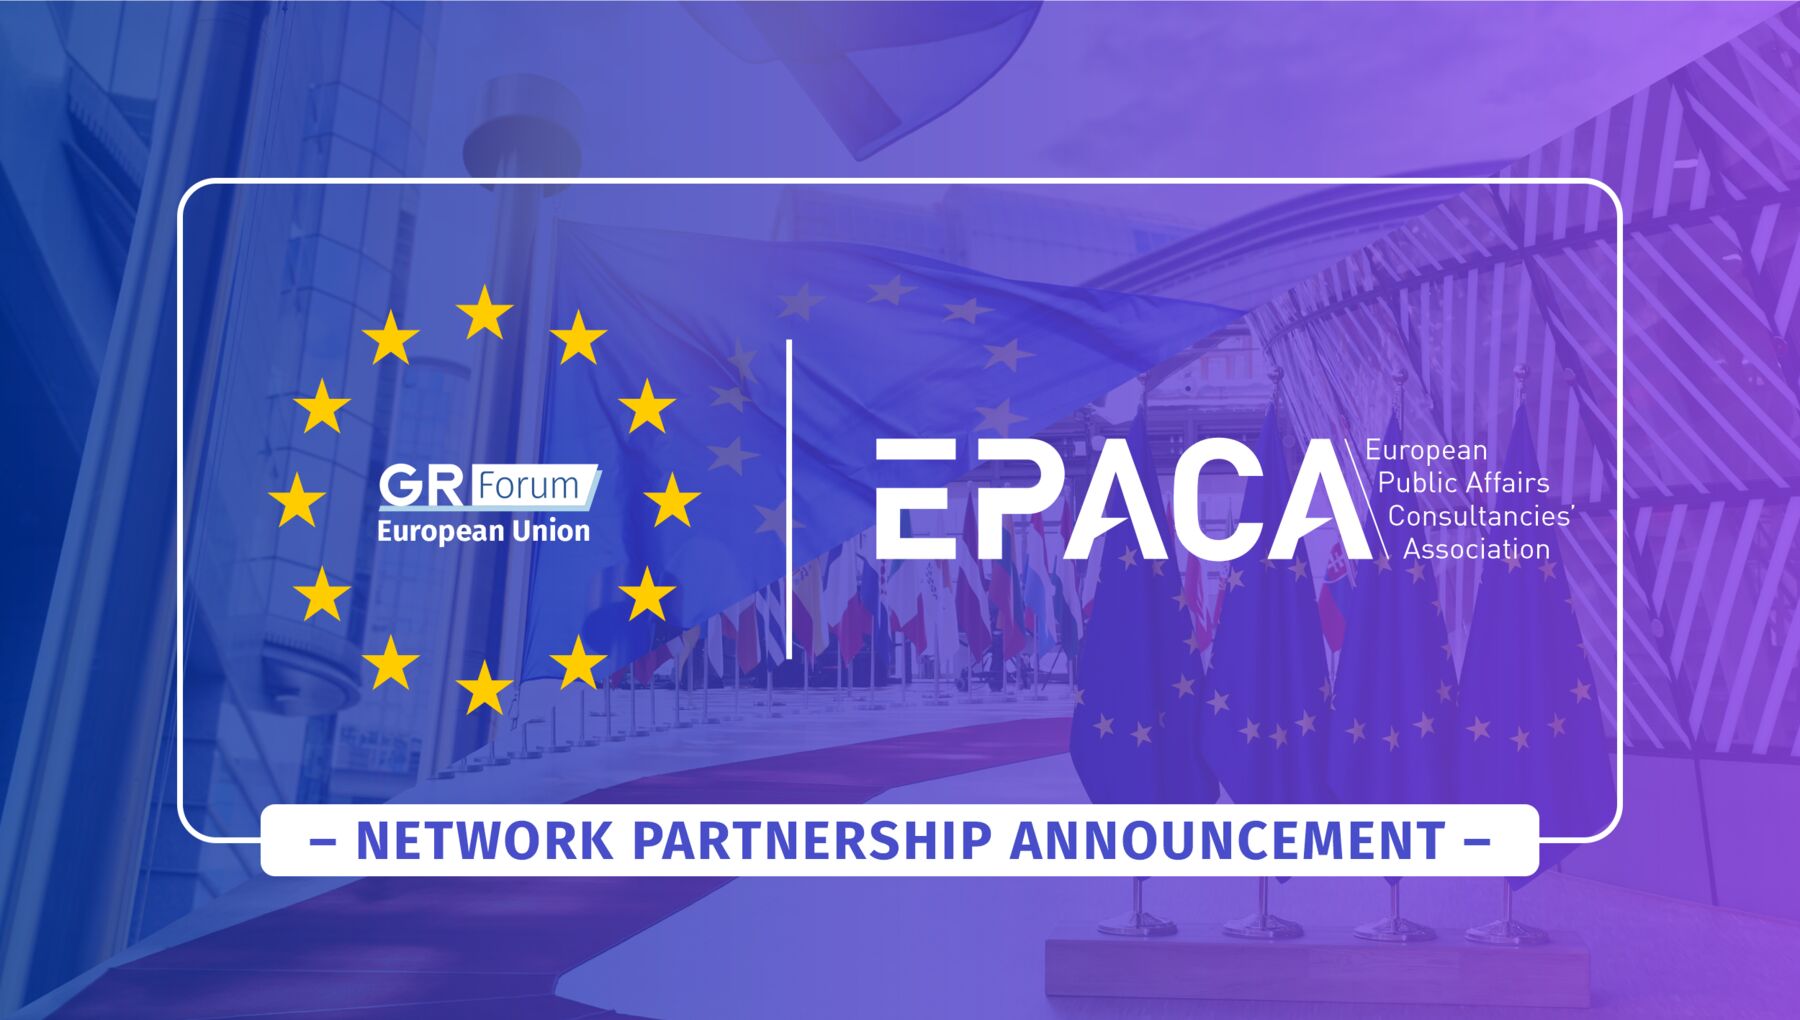 EPACA joins the EU GR Forum as a network partner